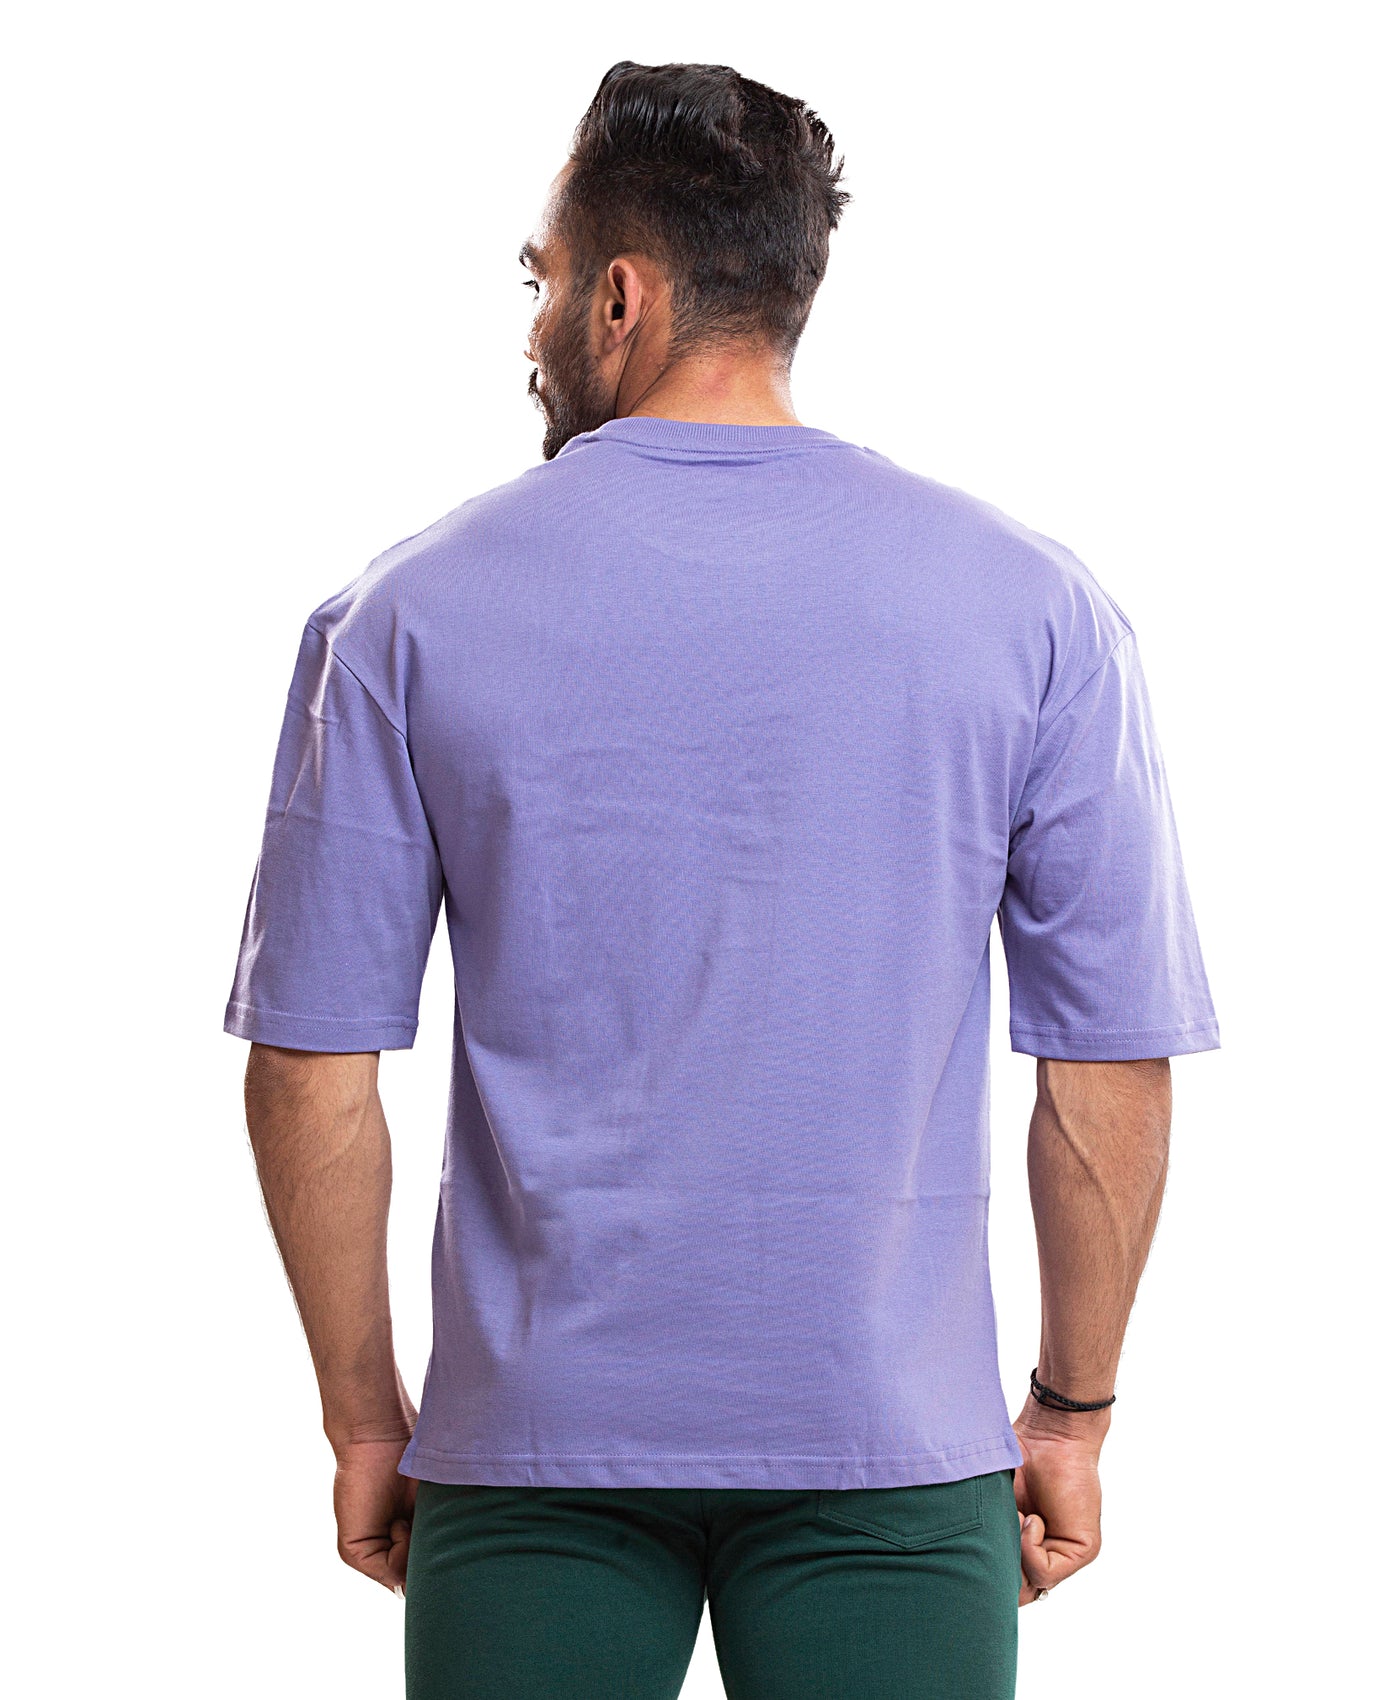 Rebel Youth Off-Shoulder T-shirt - Lavender